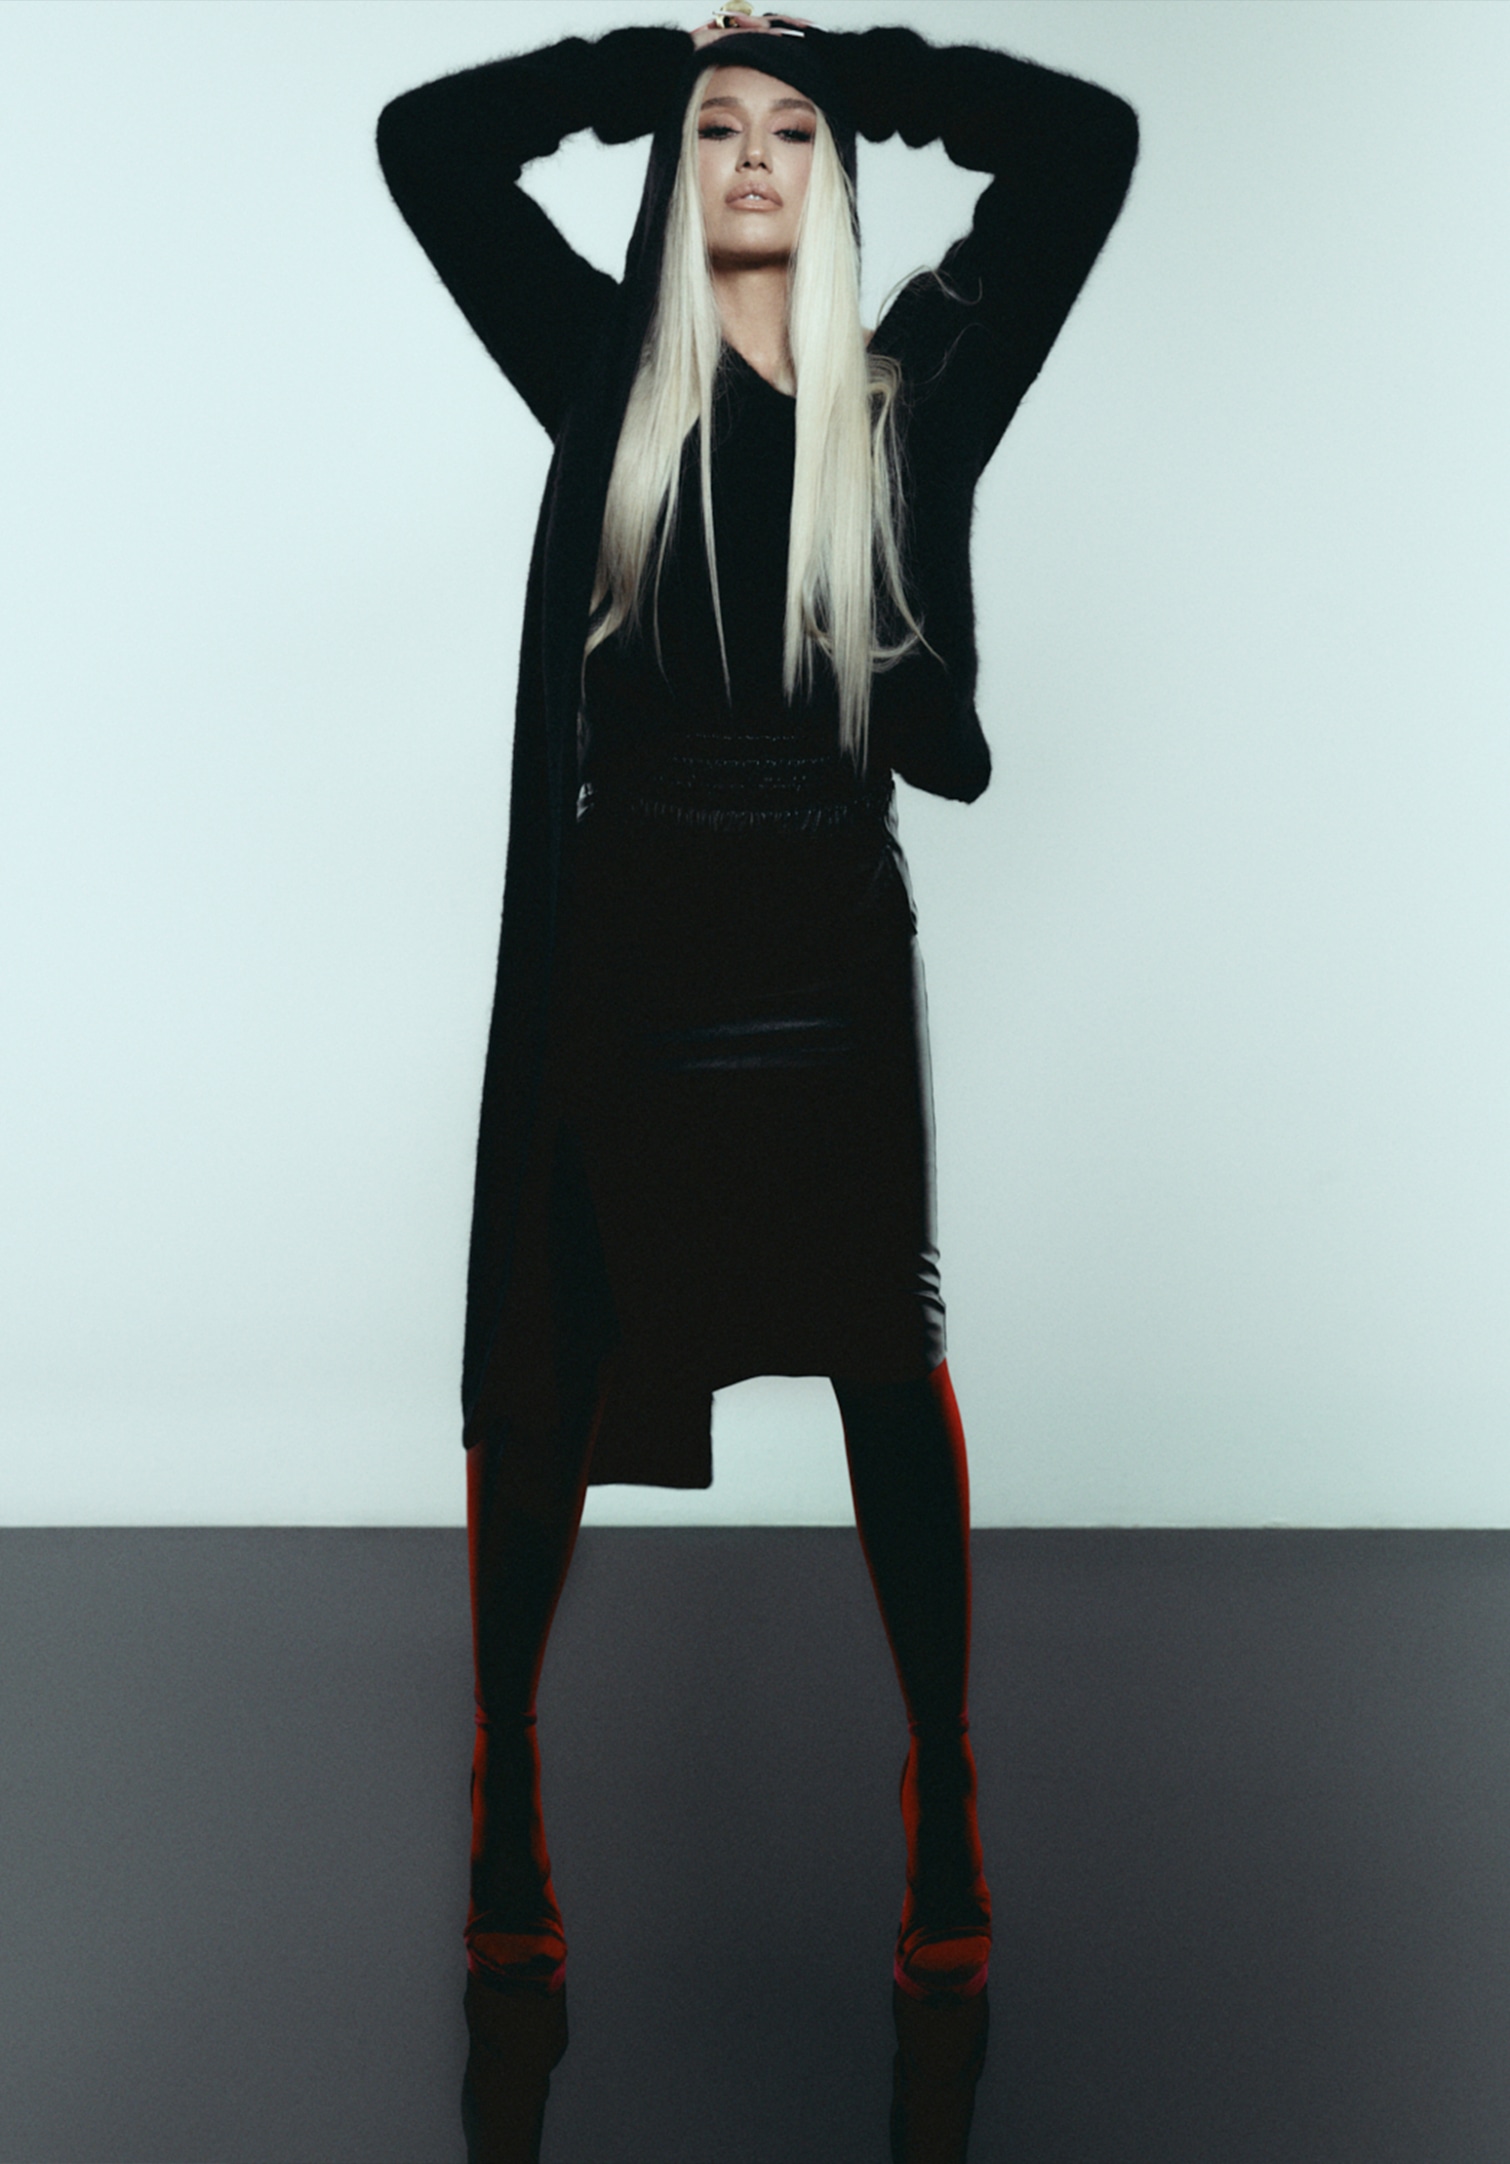 LVR Magazine: Cover Story - Gwen Stefani, The Artist’s Brush